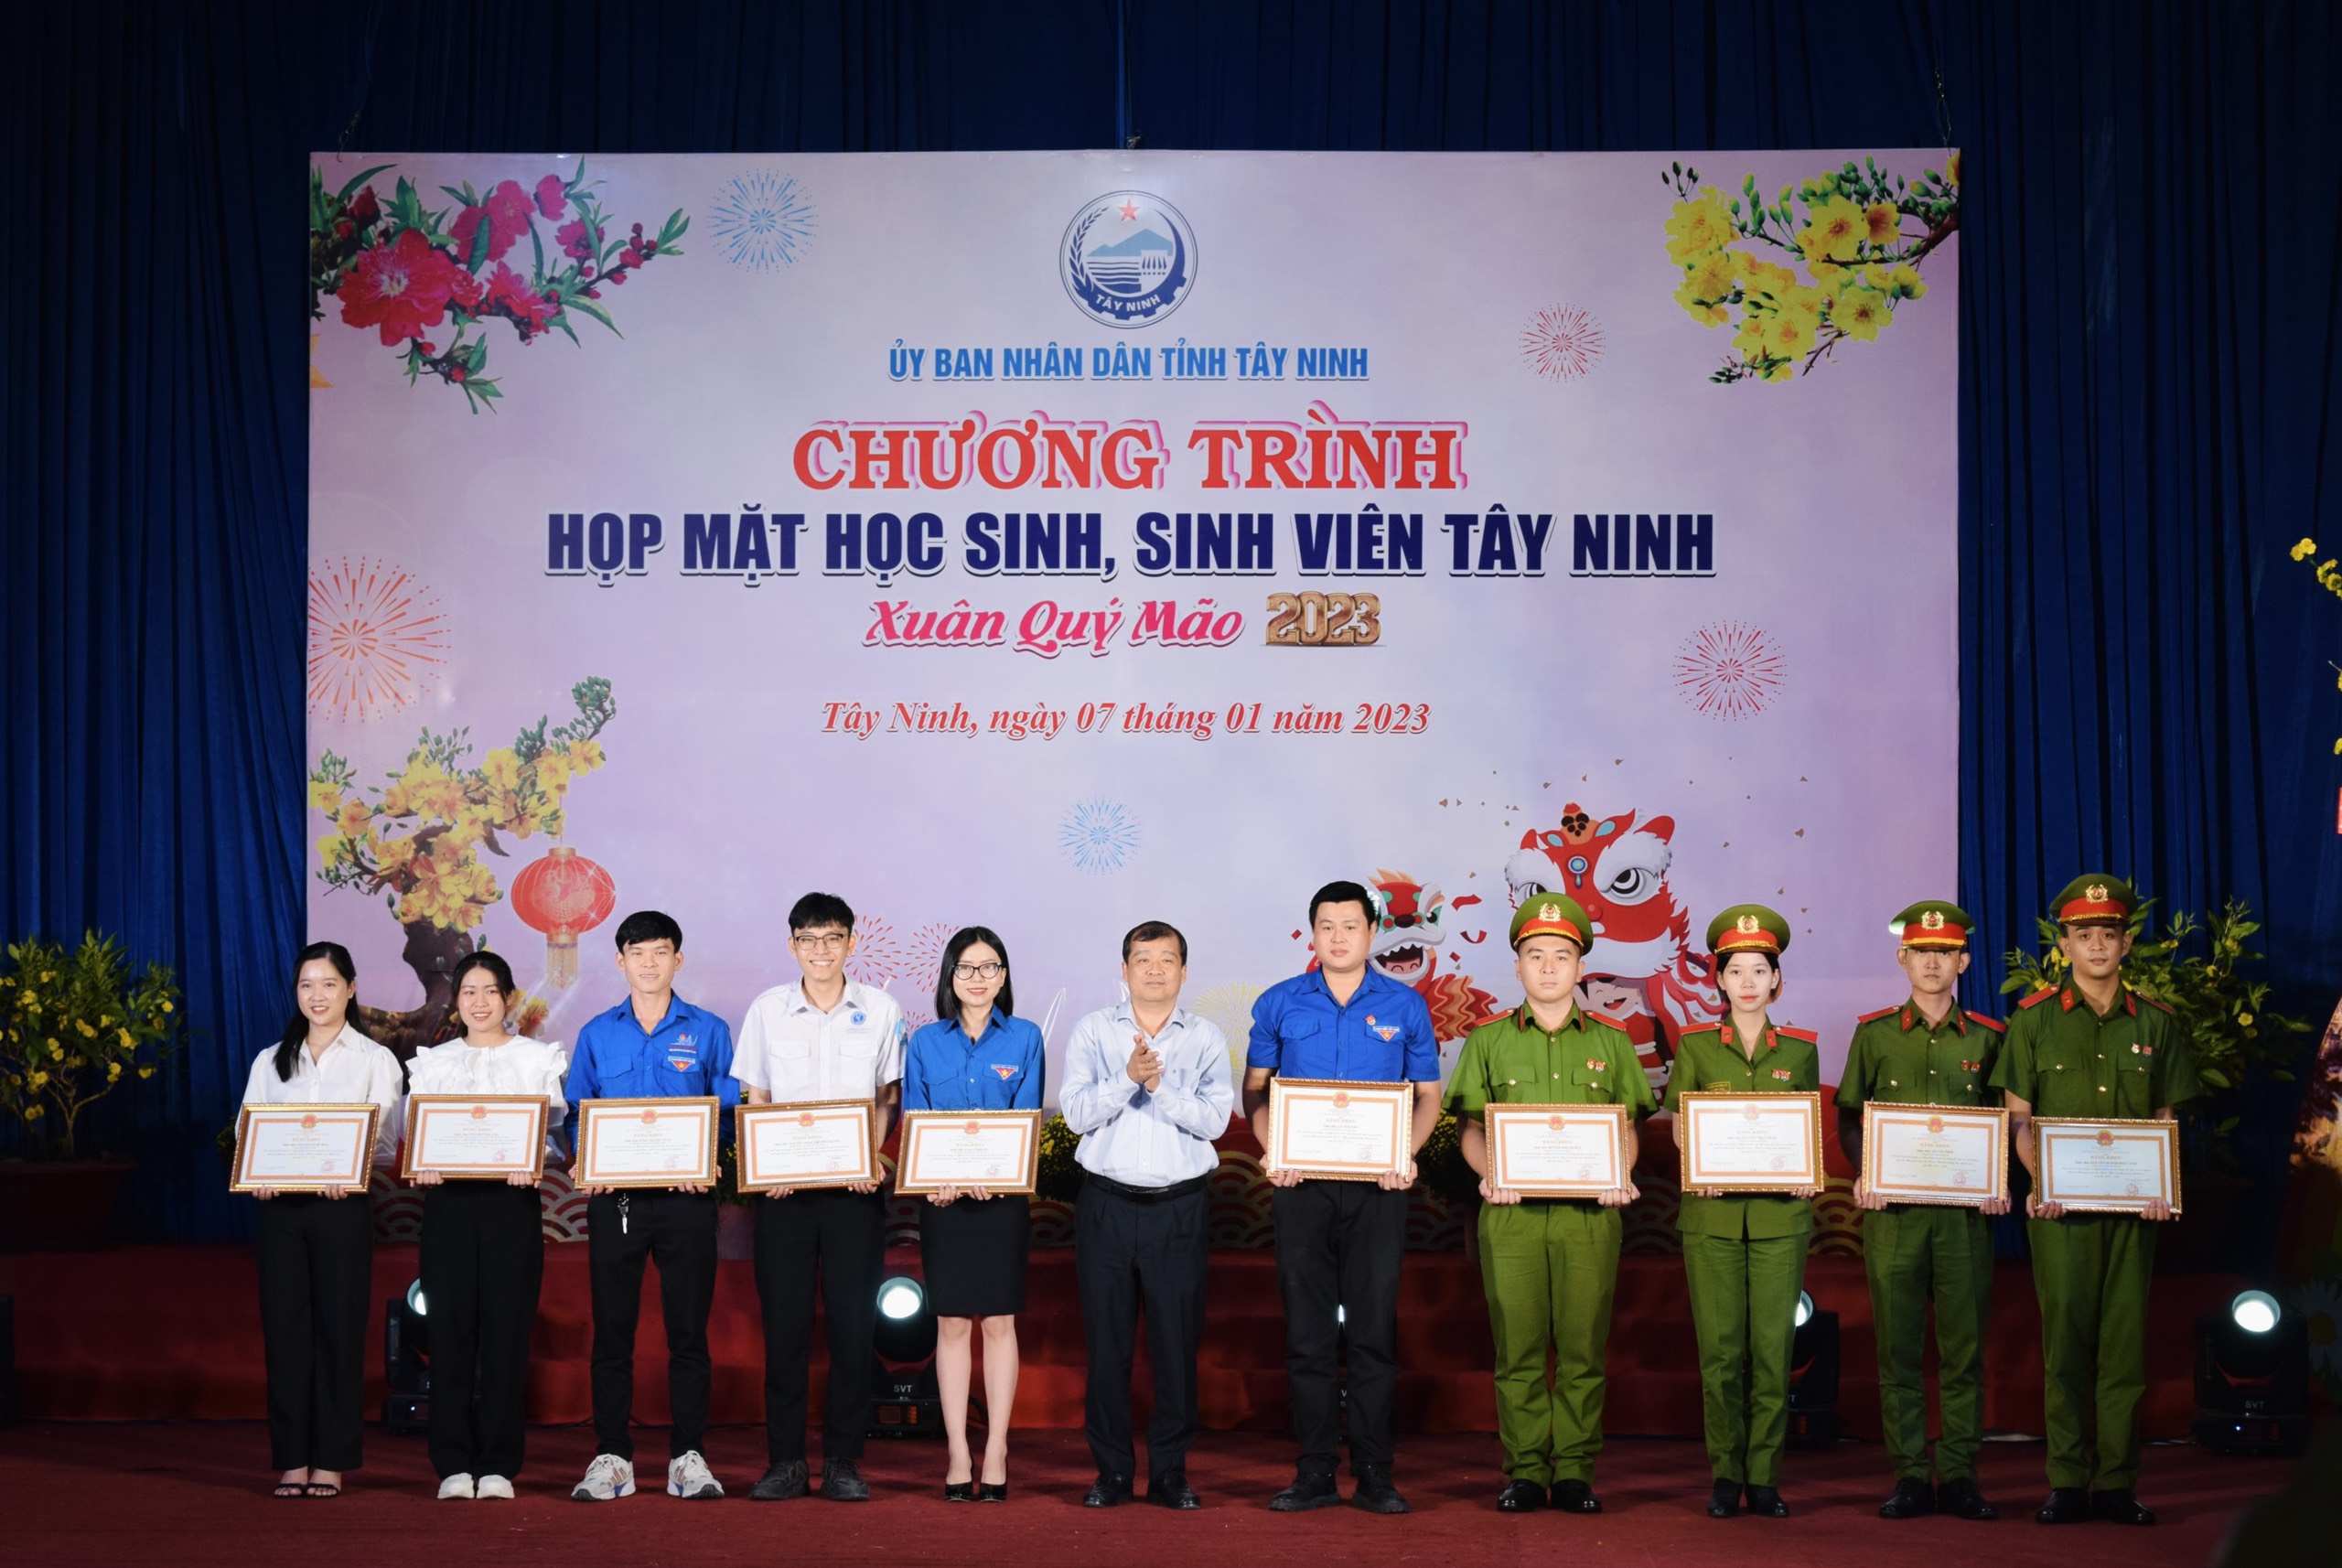 Tây Ninh tổ chức “Họp mặt học sinh sinh viên” trước thềm Xuân Quý Mão 2023